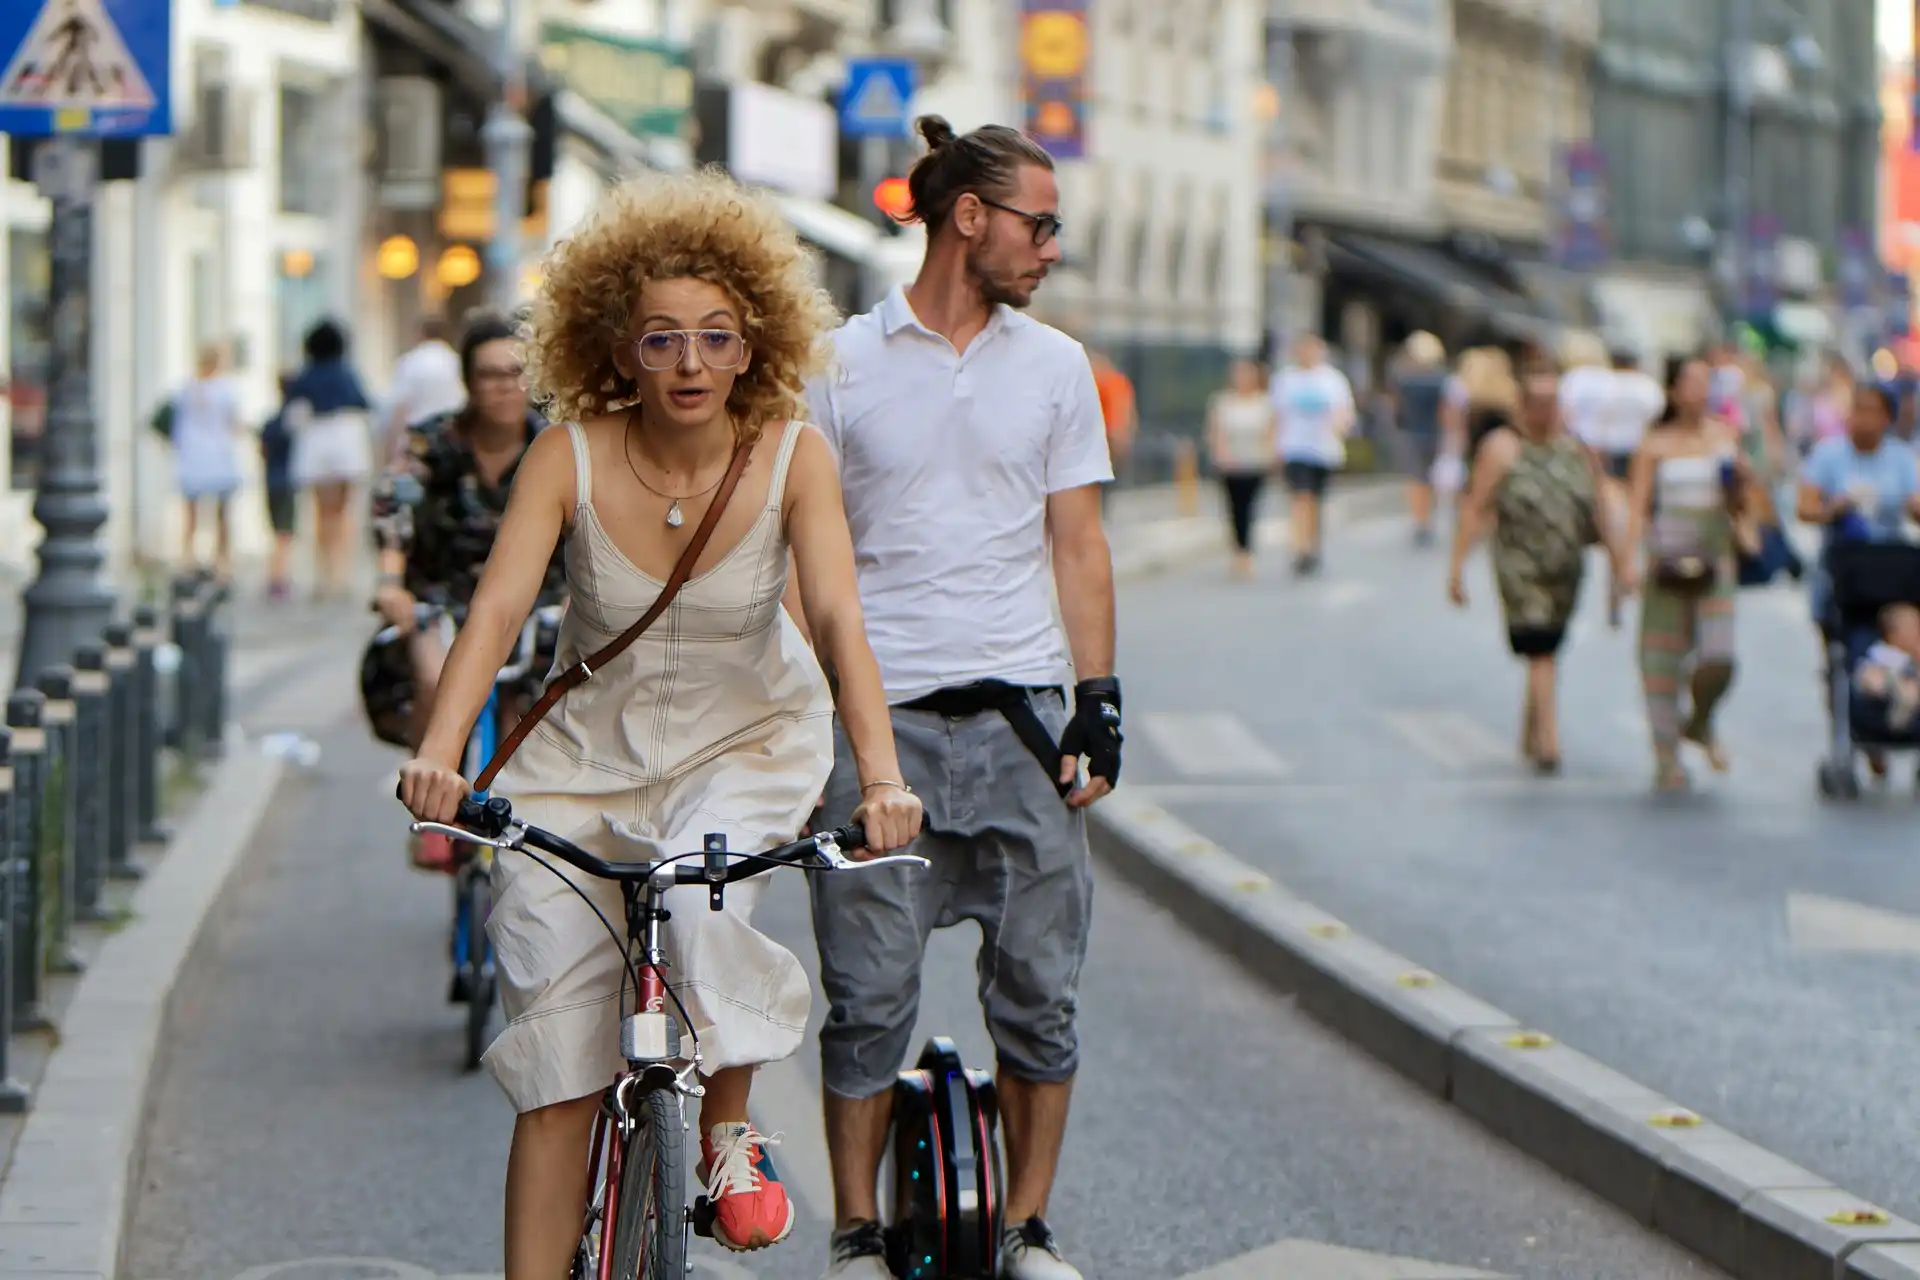 ¡Con la bici, ni un paso atrás! campaña contra la eliminación de carriles bici por parte de PP-VOX / Foto: PB